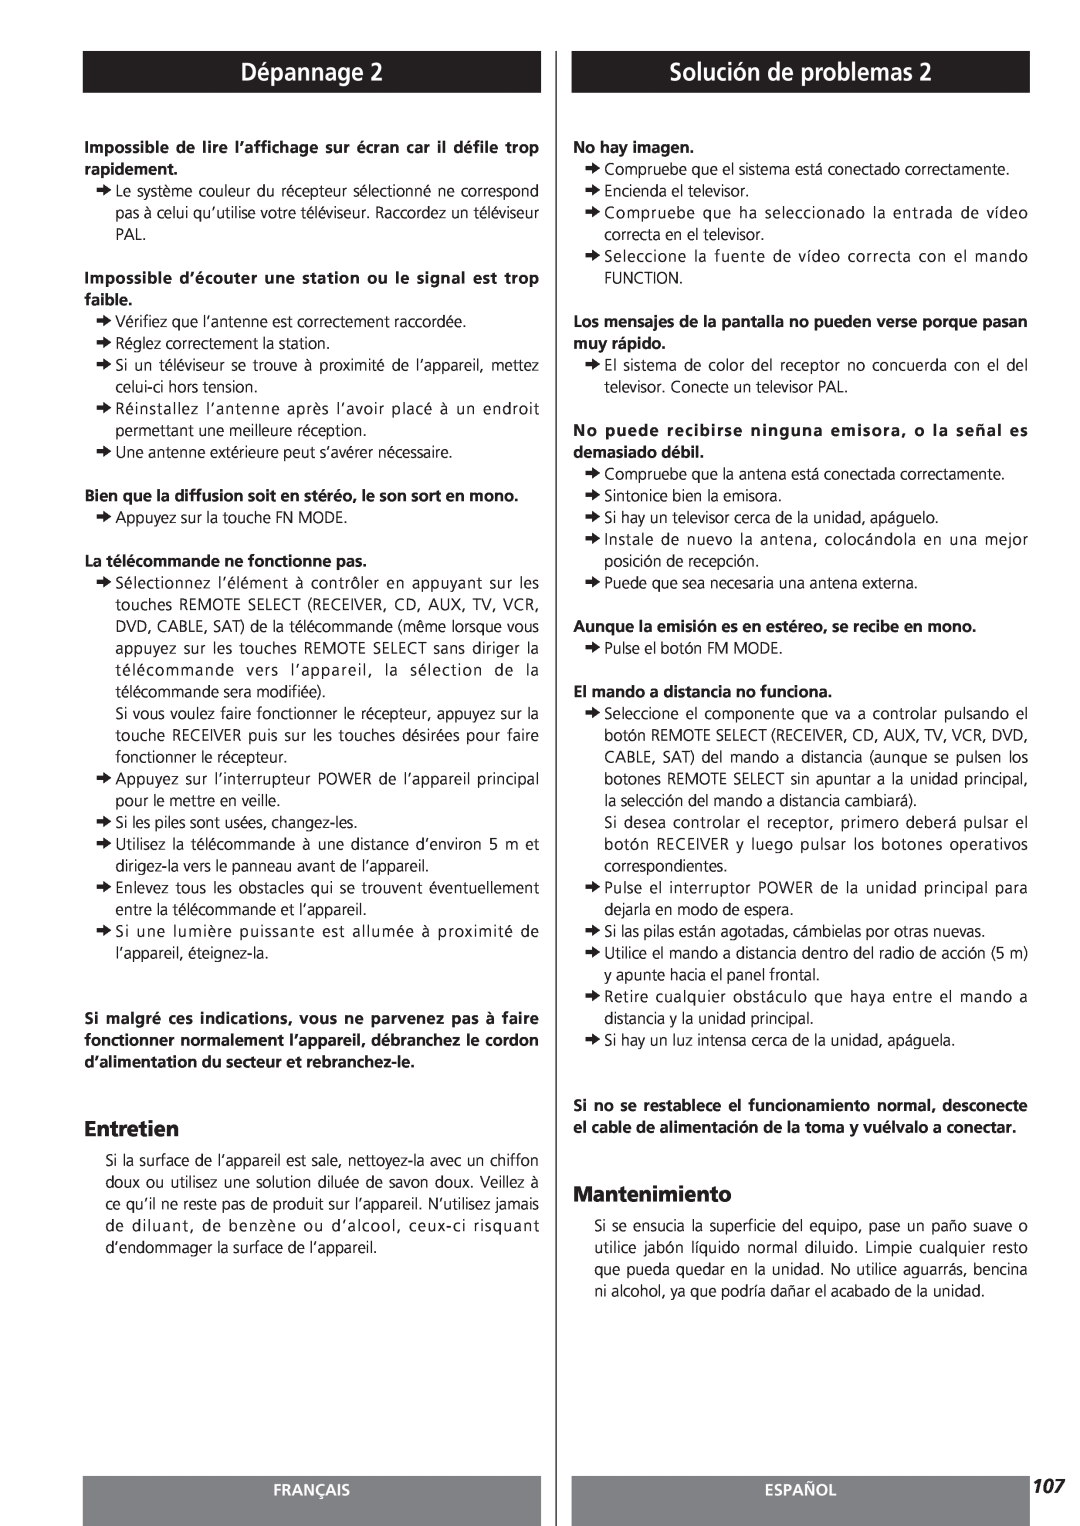 Teac AG-15D owner manual Entretien, Mantenimiento, Dépannage, Solución de problemas, Français, Español 